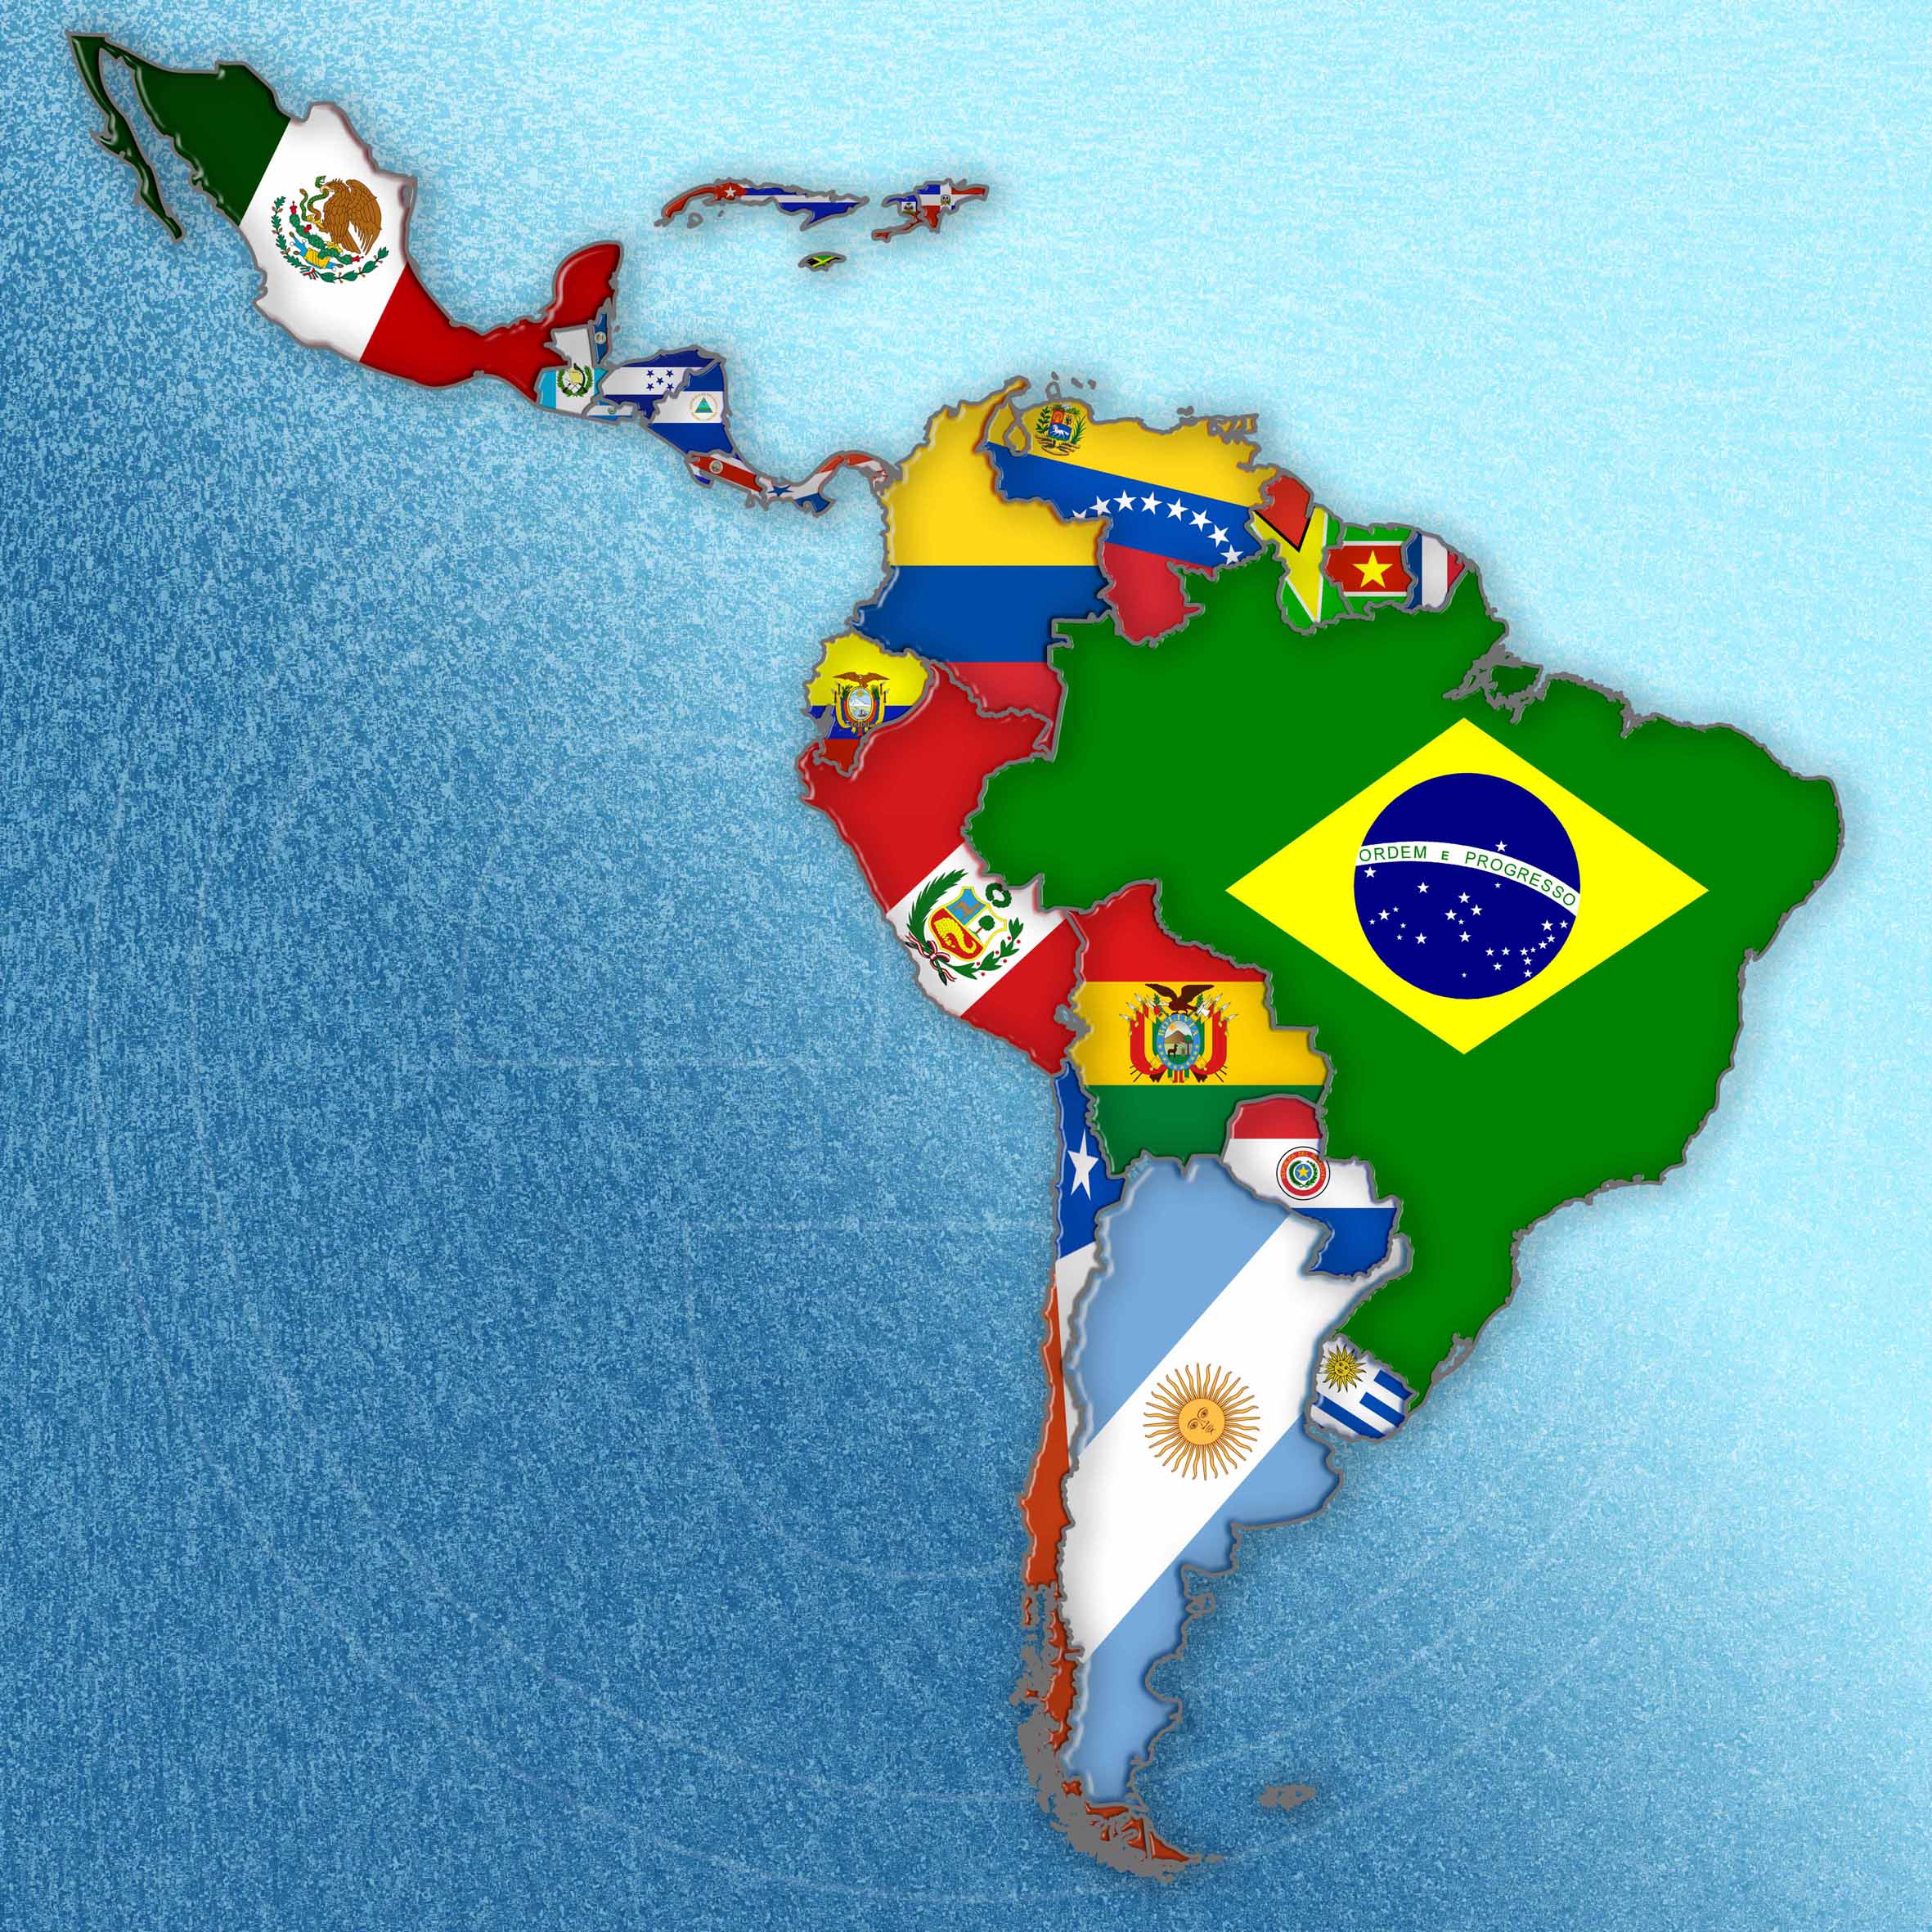 Eficacia y seguridad en la vida real de amlodipino/irbesartán en combinación fija en el tratamiento de la hipertensión en América Latina: estudio PARCERIA